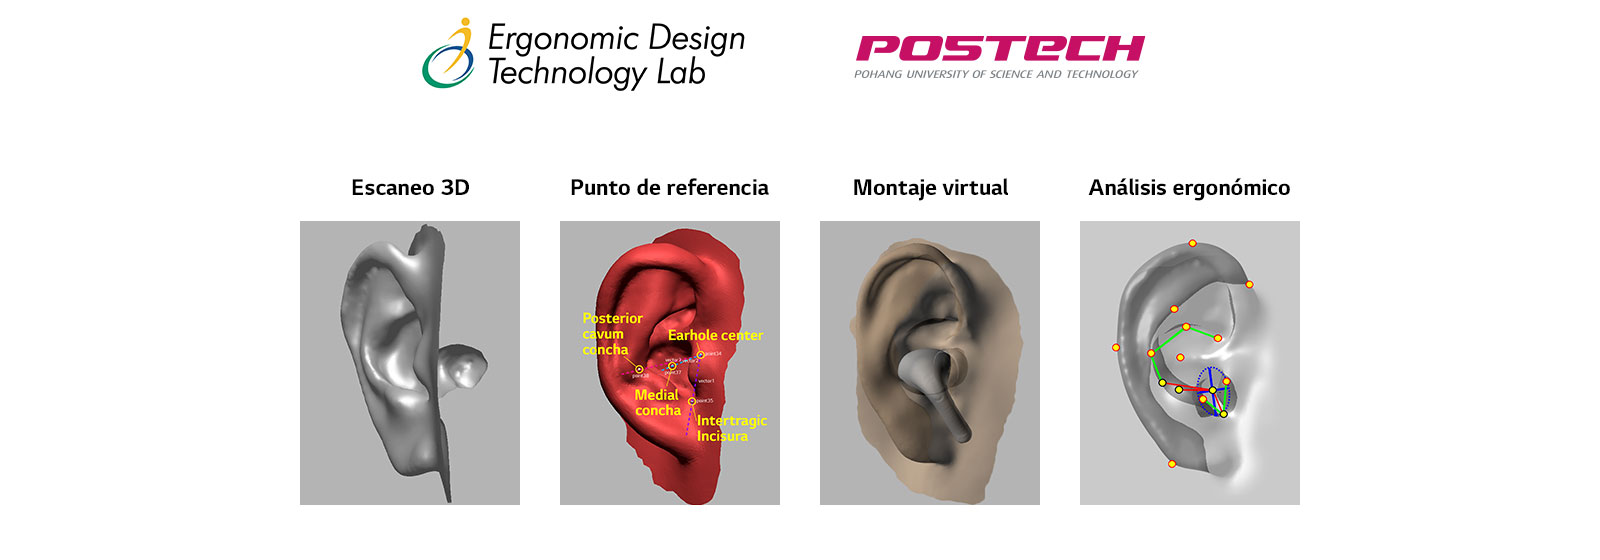 Una imagen en la que se revela la imagen de modelado de orejas en forma 3D en un total de 4 etapas.